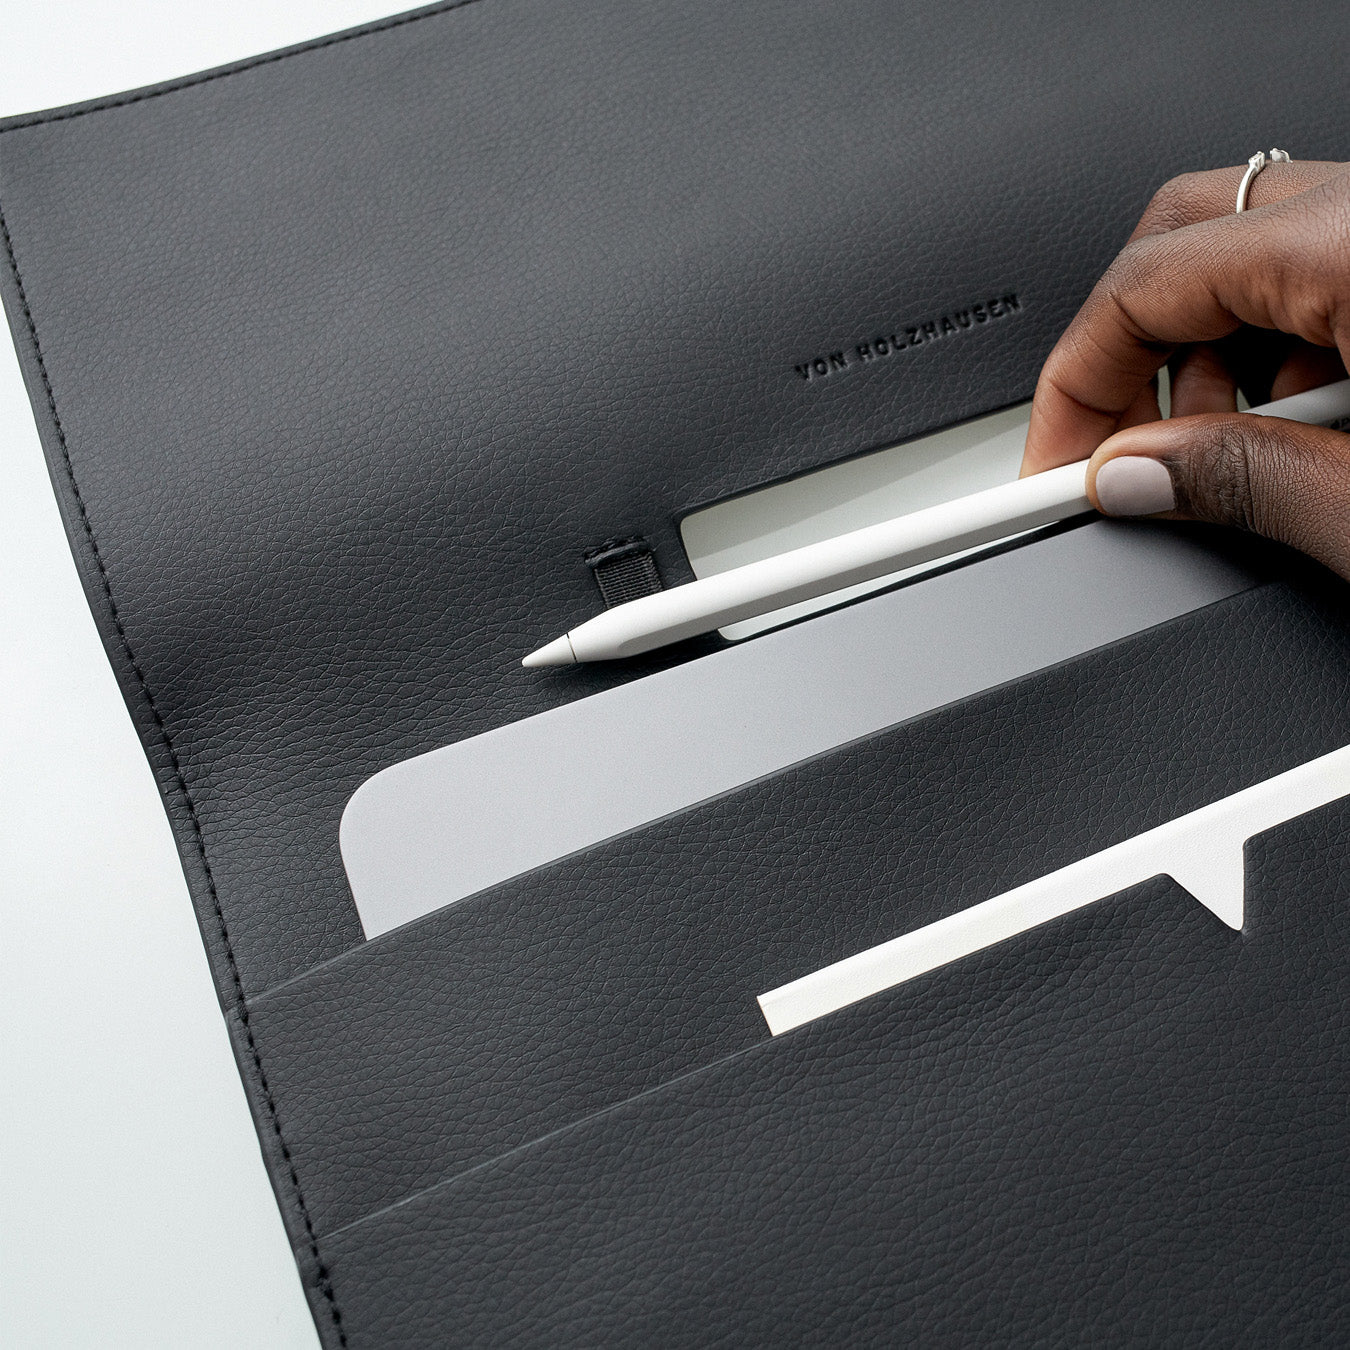 The iPad Portfolio 12.9-inch - Sample Sale in Technik-Leather in Black image 4